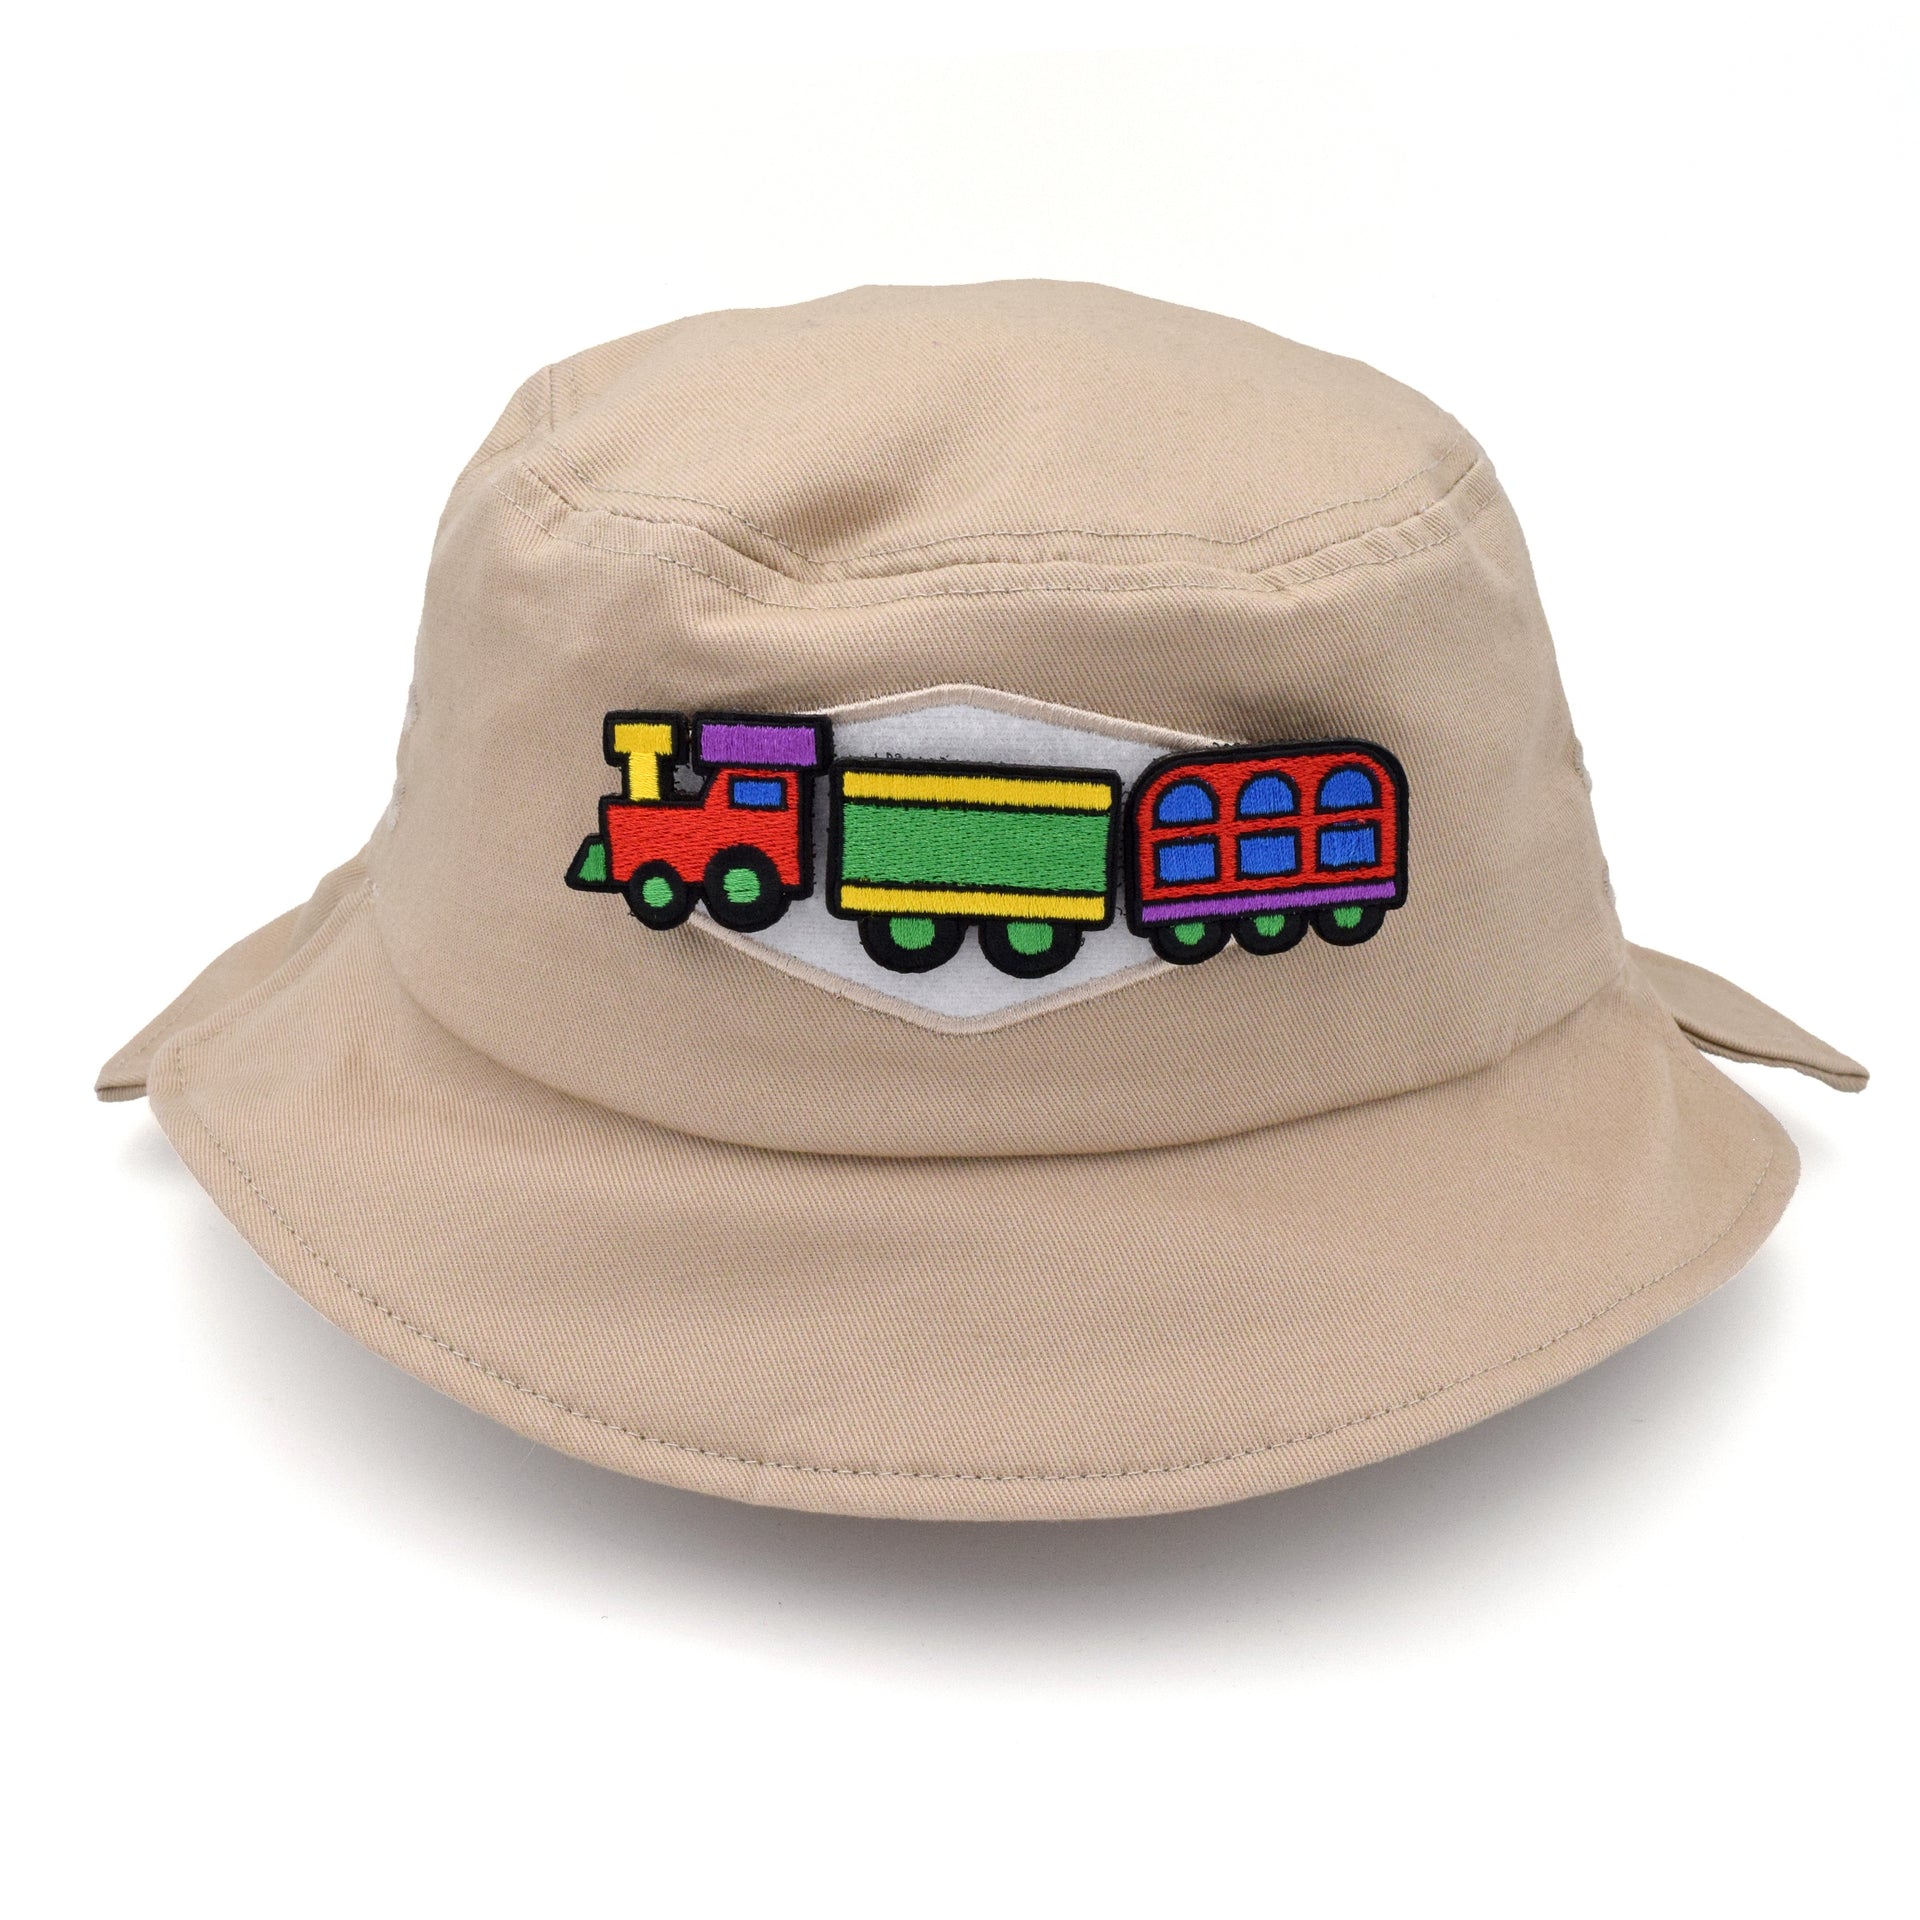 uAVD Sticker Bucket Hat